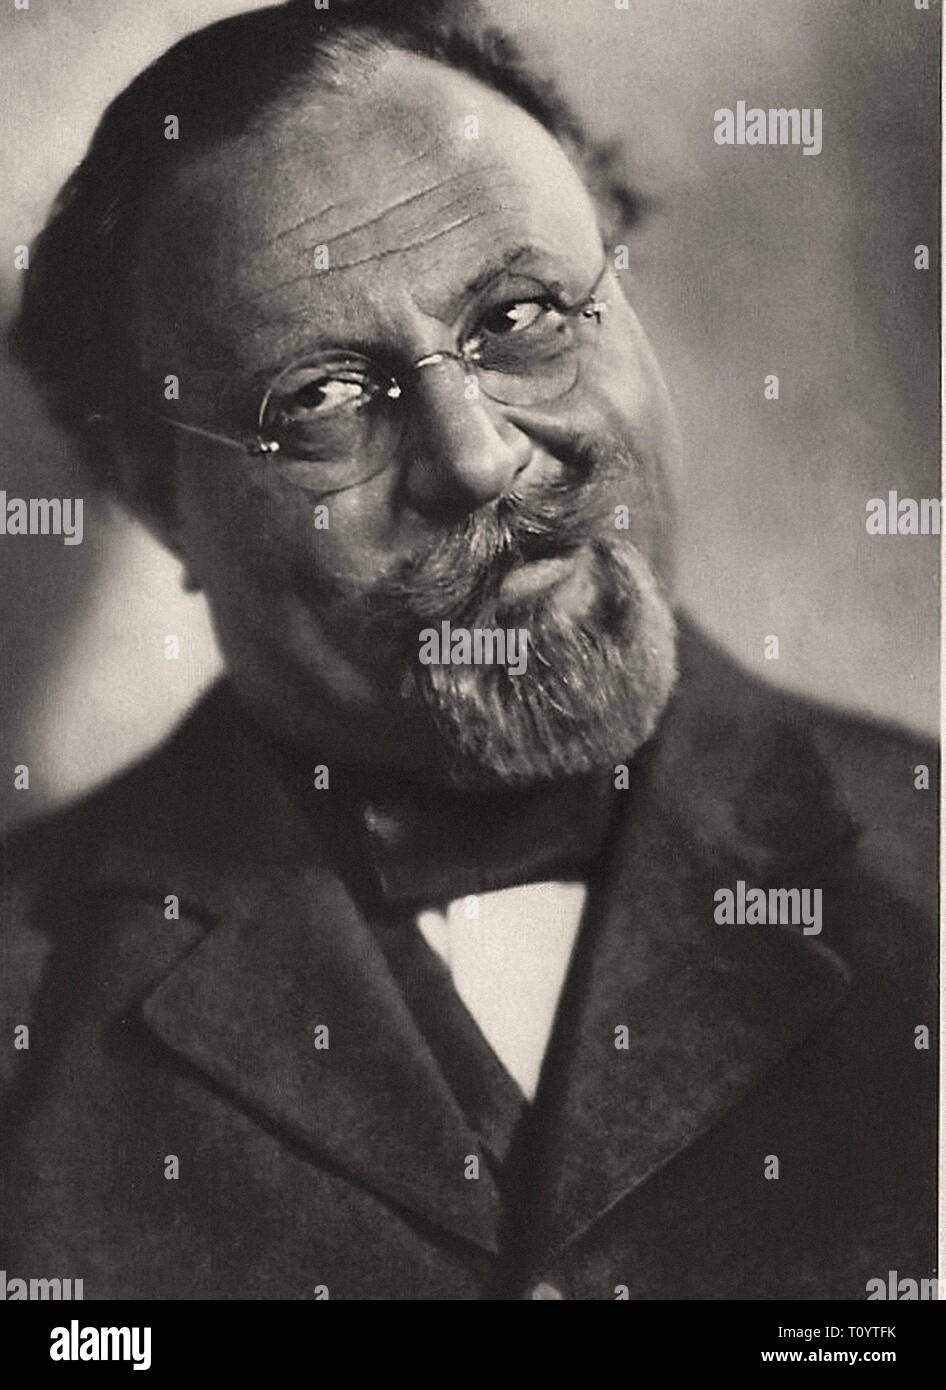 Photographic portrait of Emil Jannings in Der Blaue Engel - Silent movie era Stock Photo